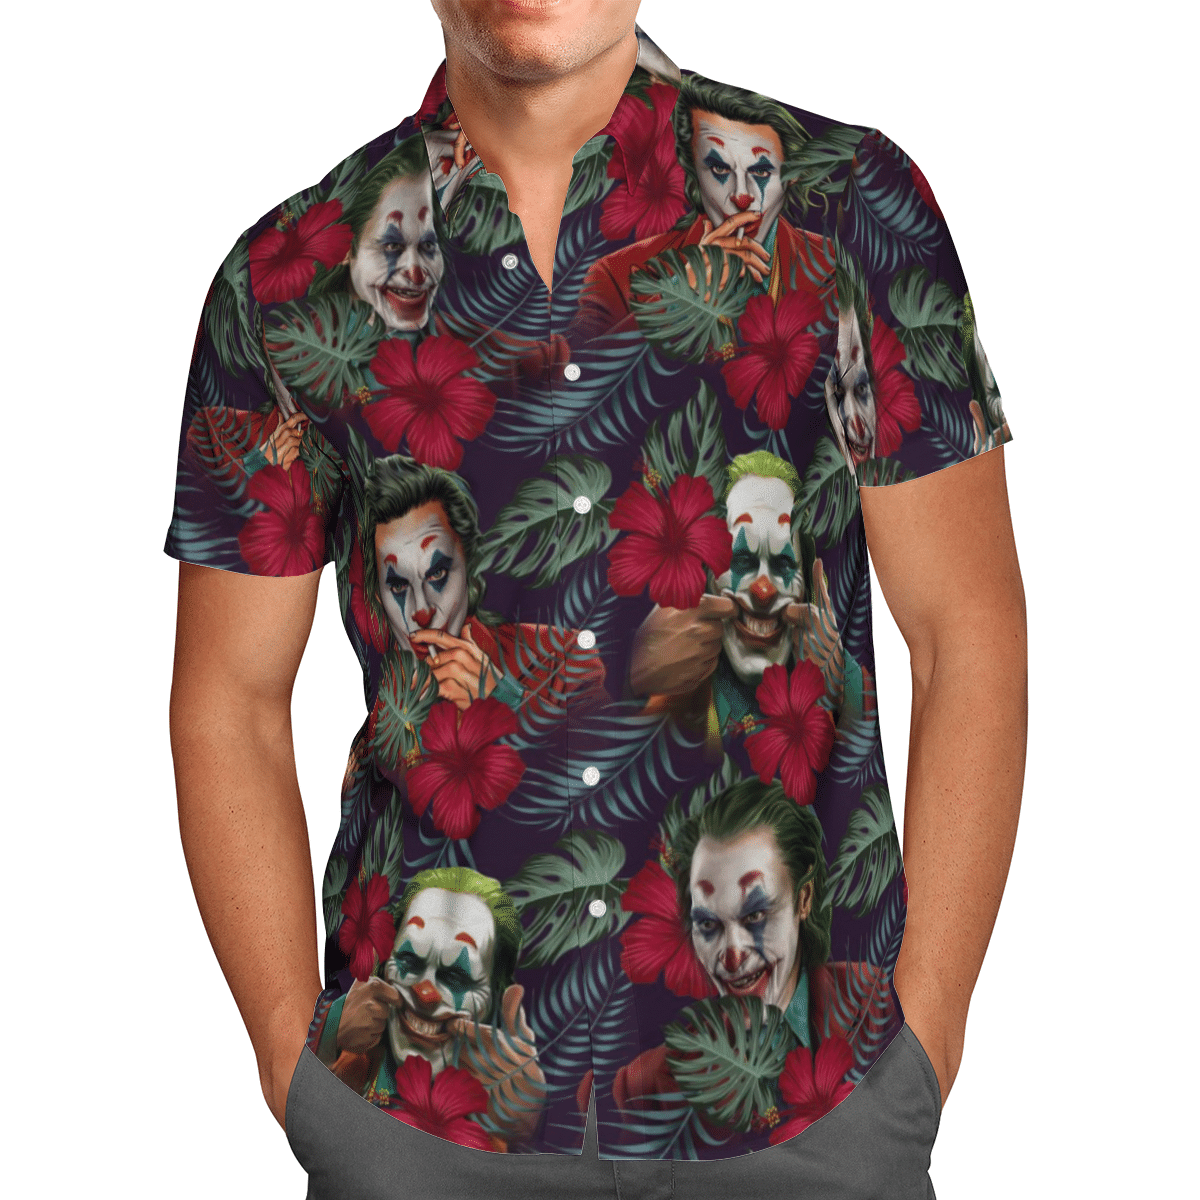 Joker cool Hawaii shirt and short 4